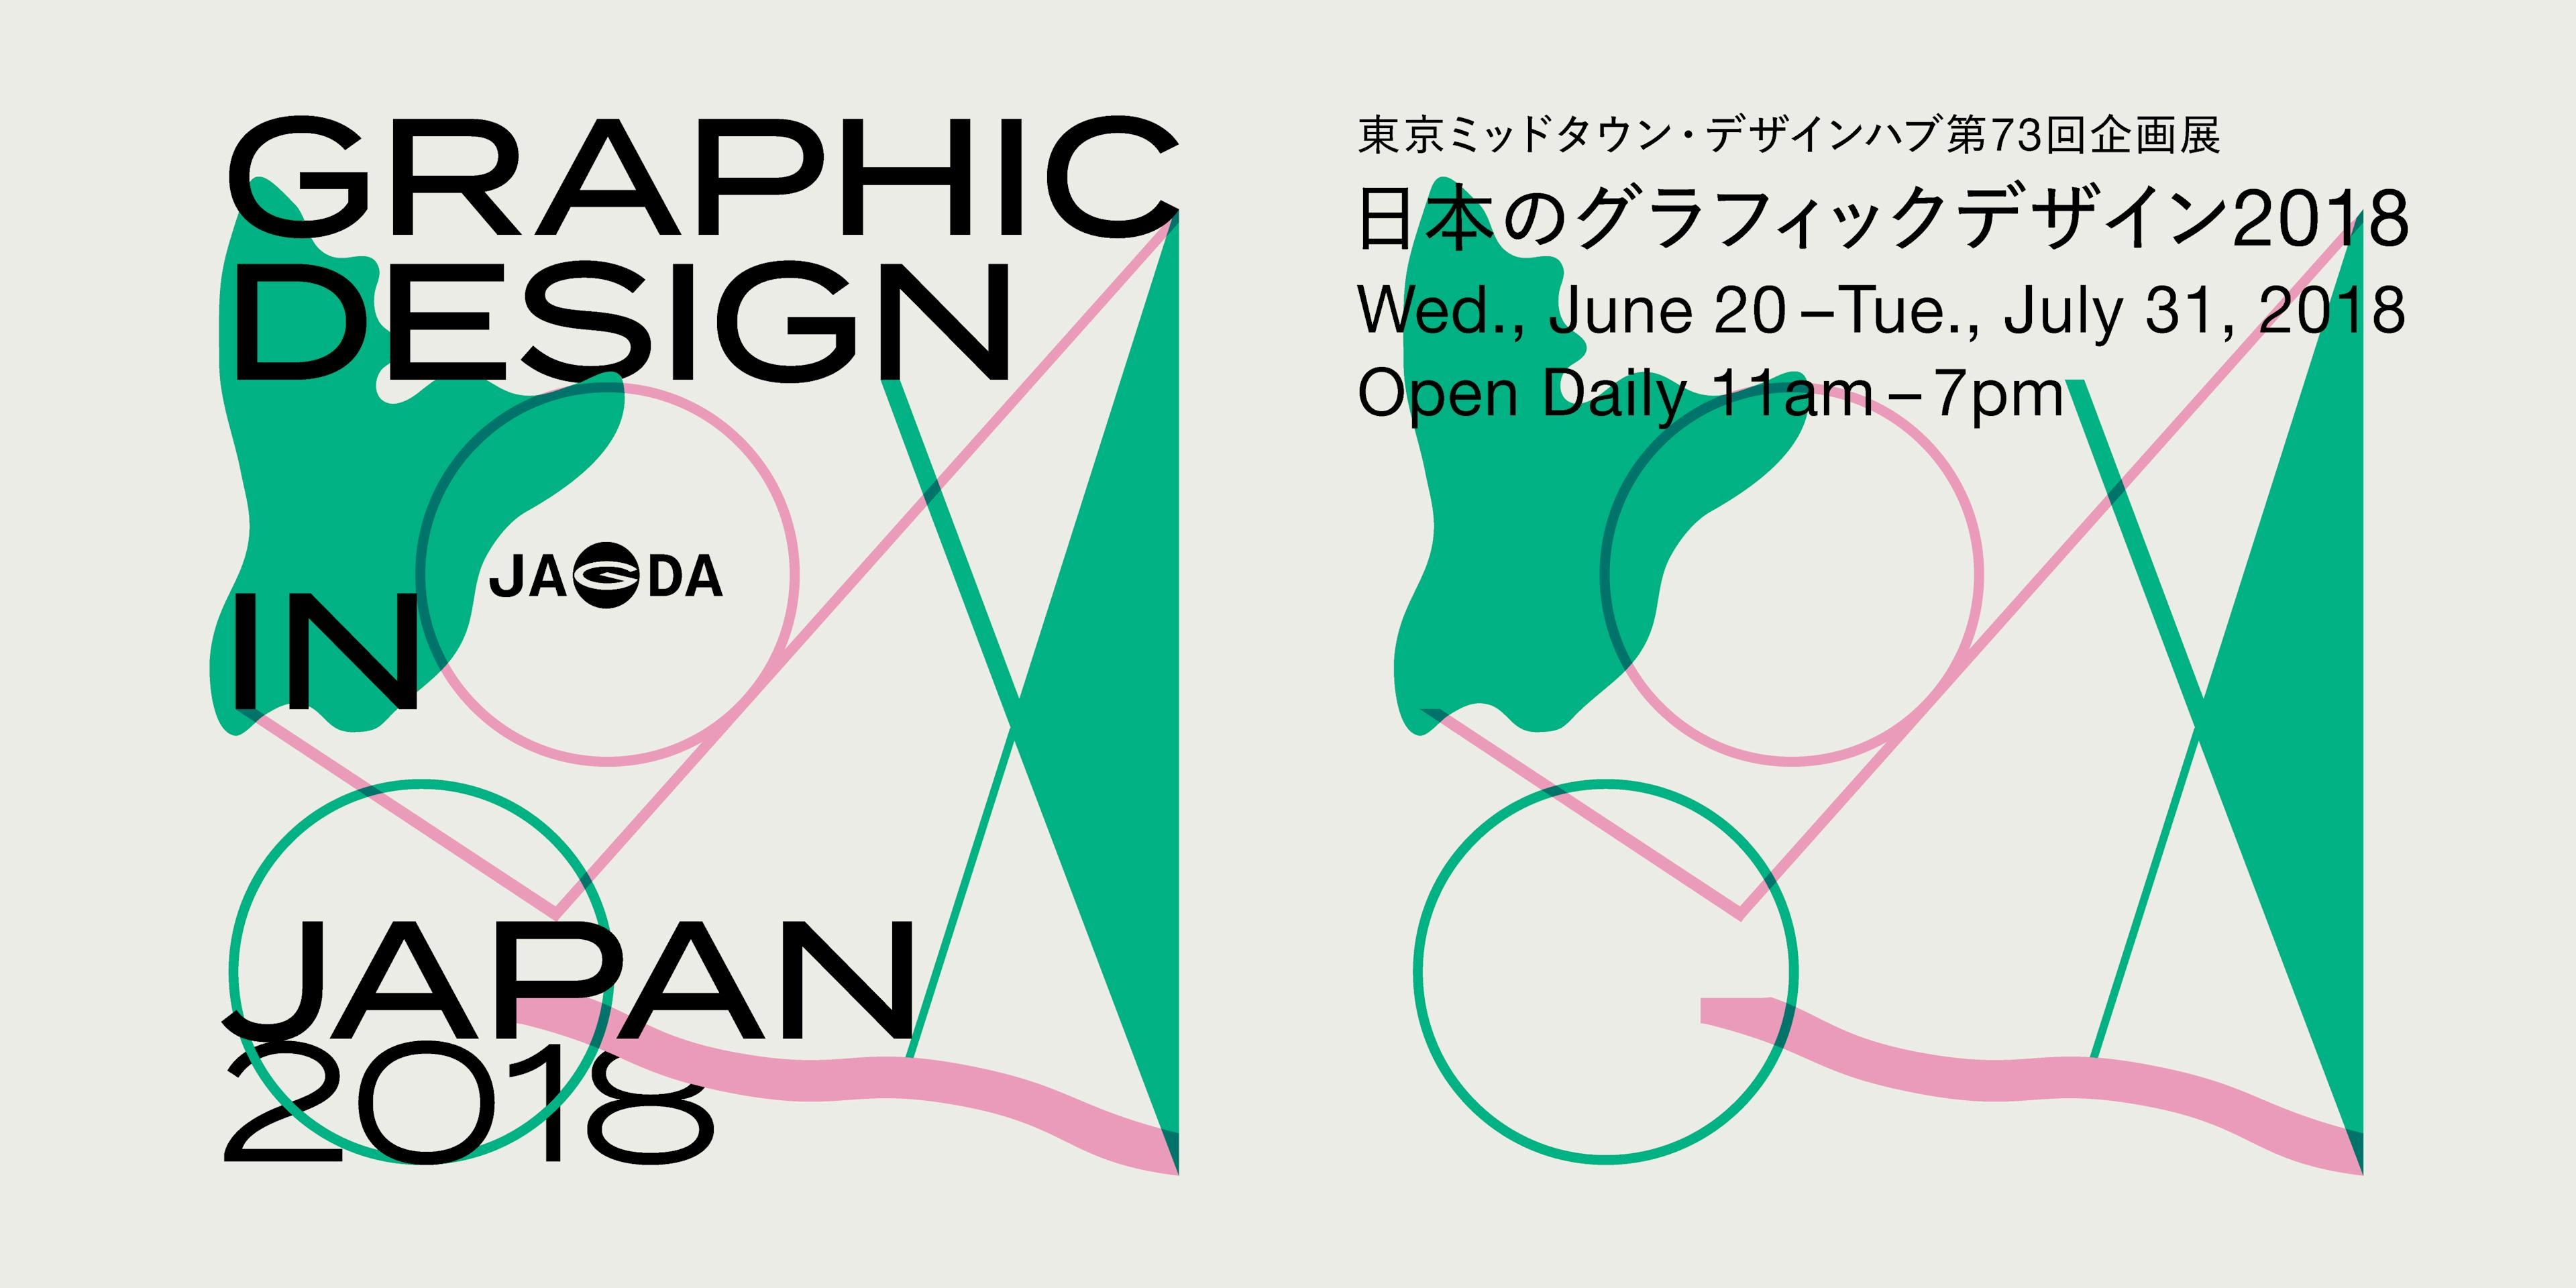 日本のグラフィックデザイン2018